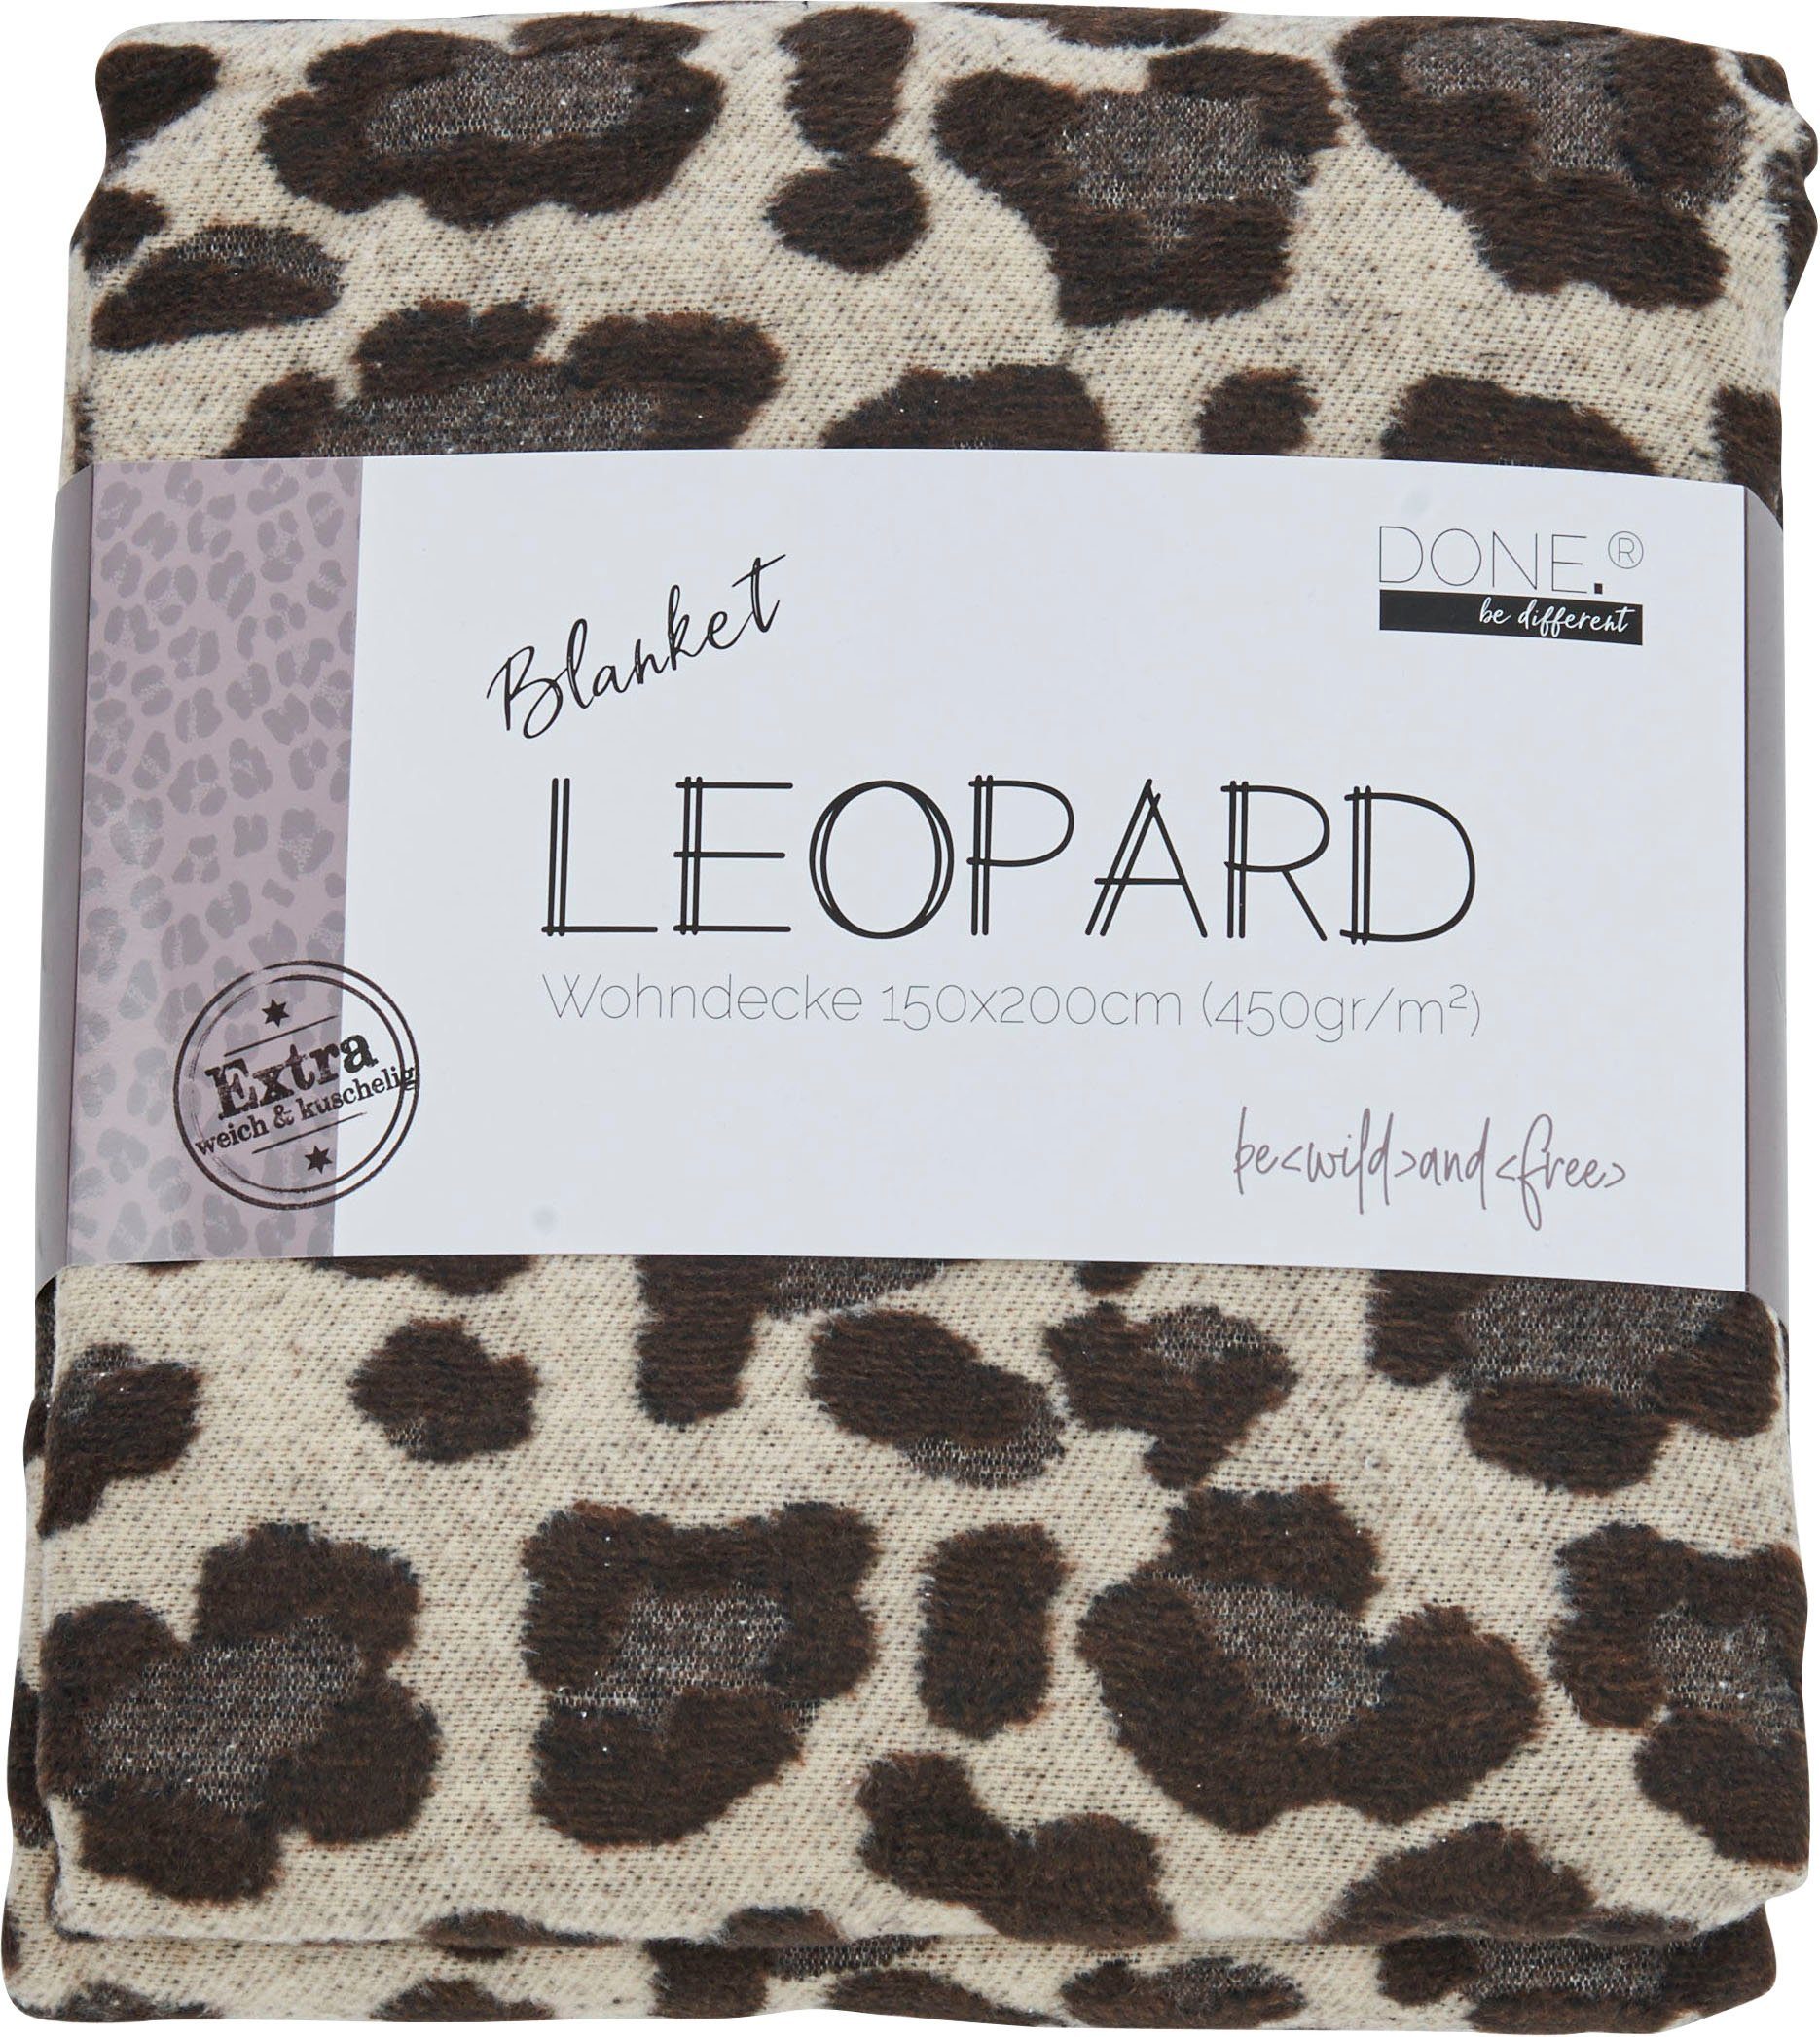 Wohndecke Leopard, done.®, Wohndecke Kuscheldecke einfassender Leo-Look, Ziernaht im mit